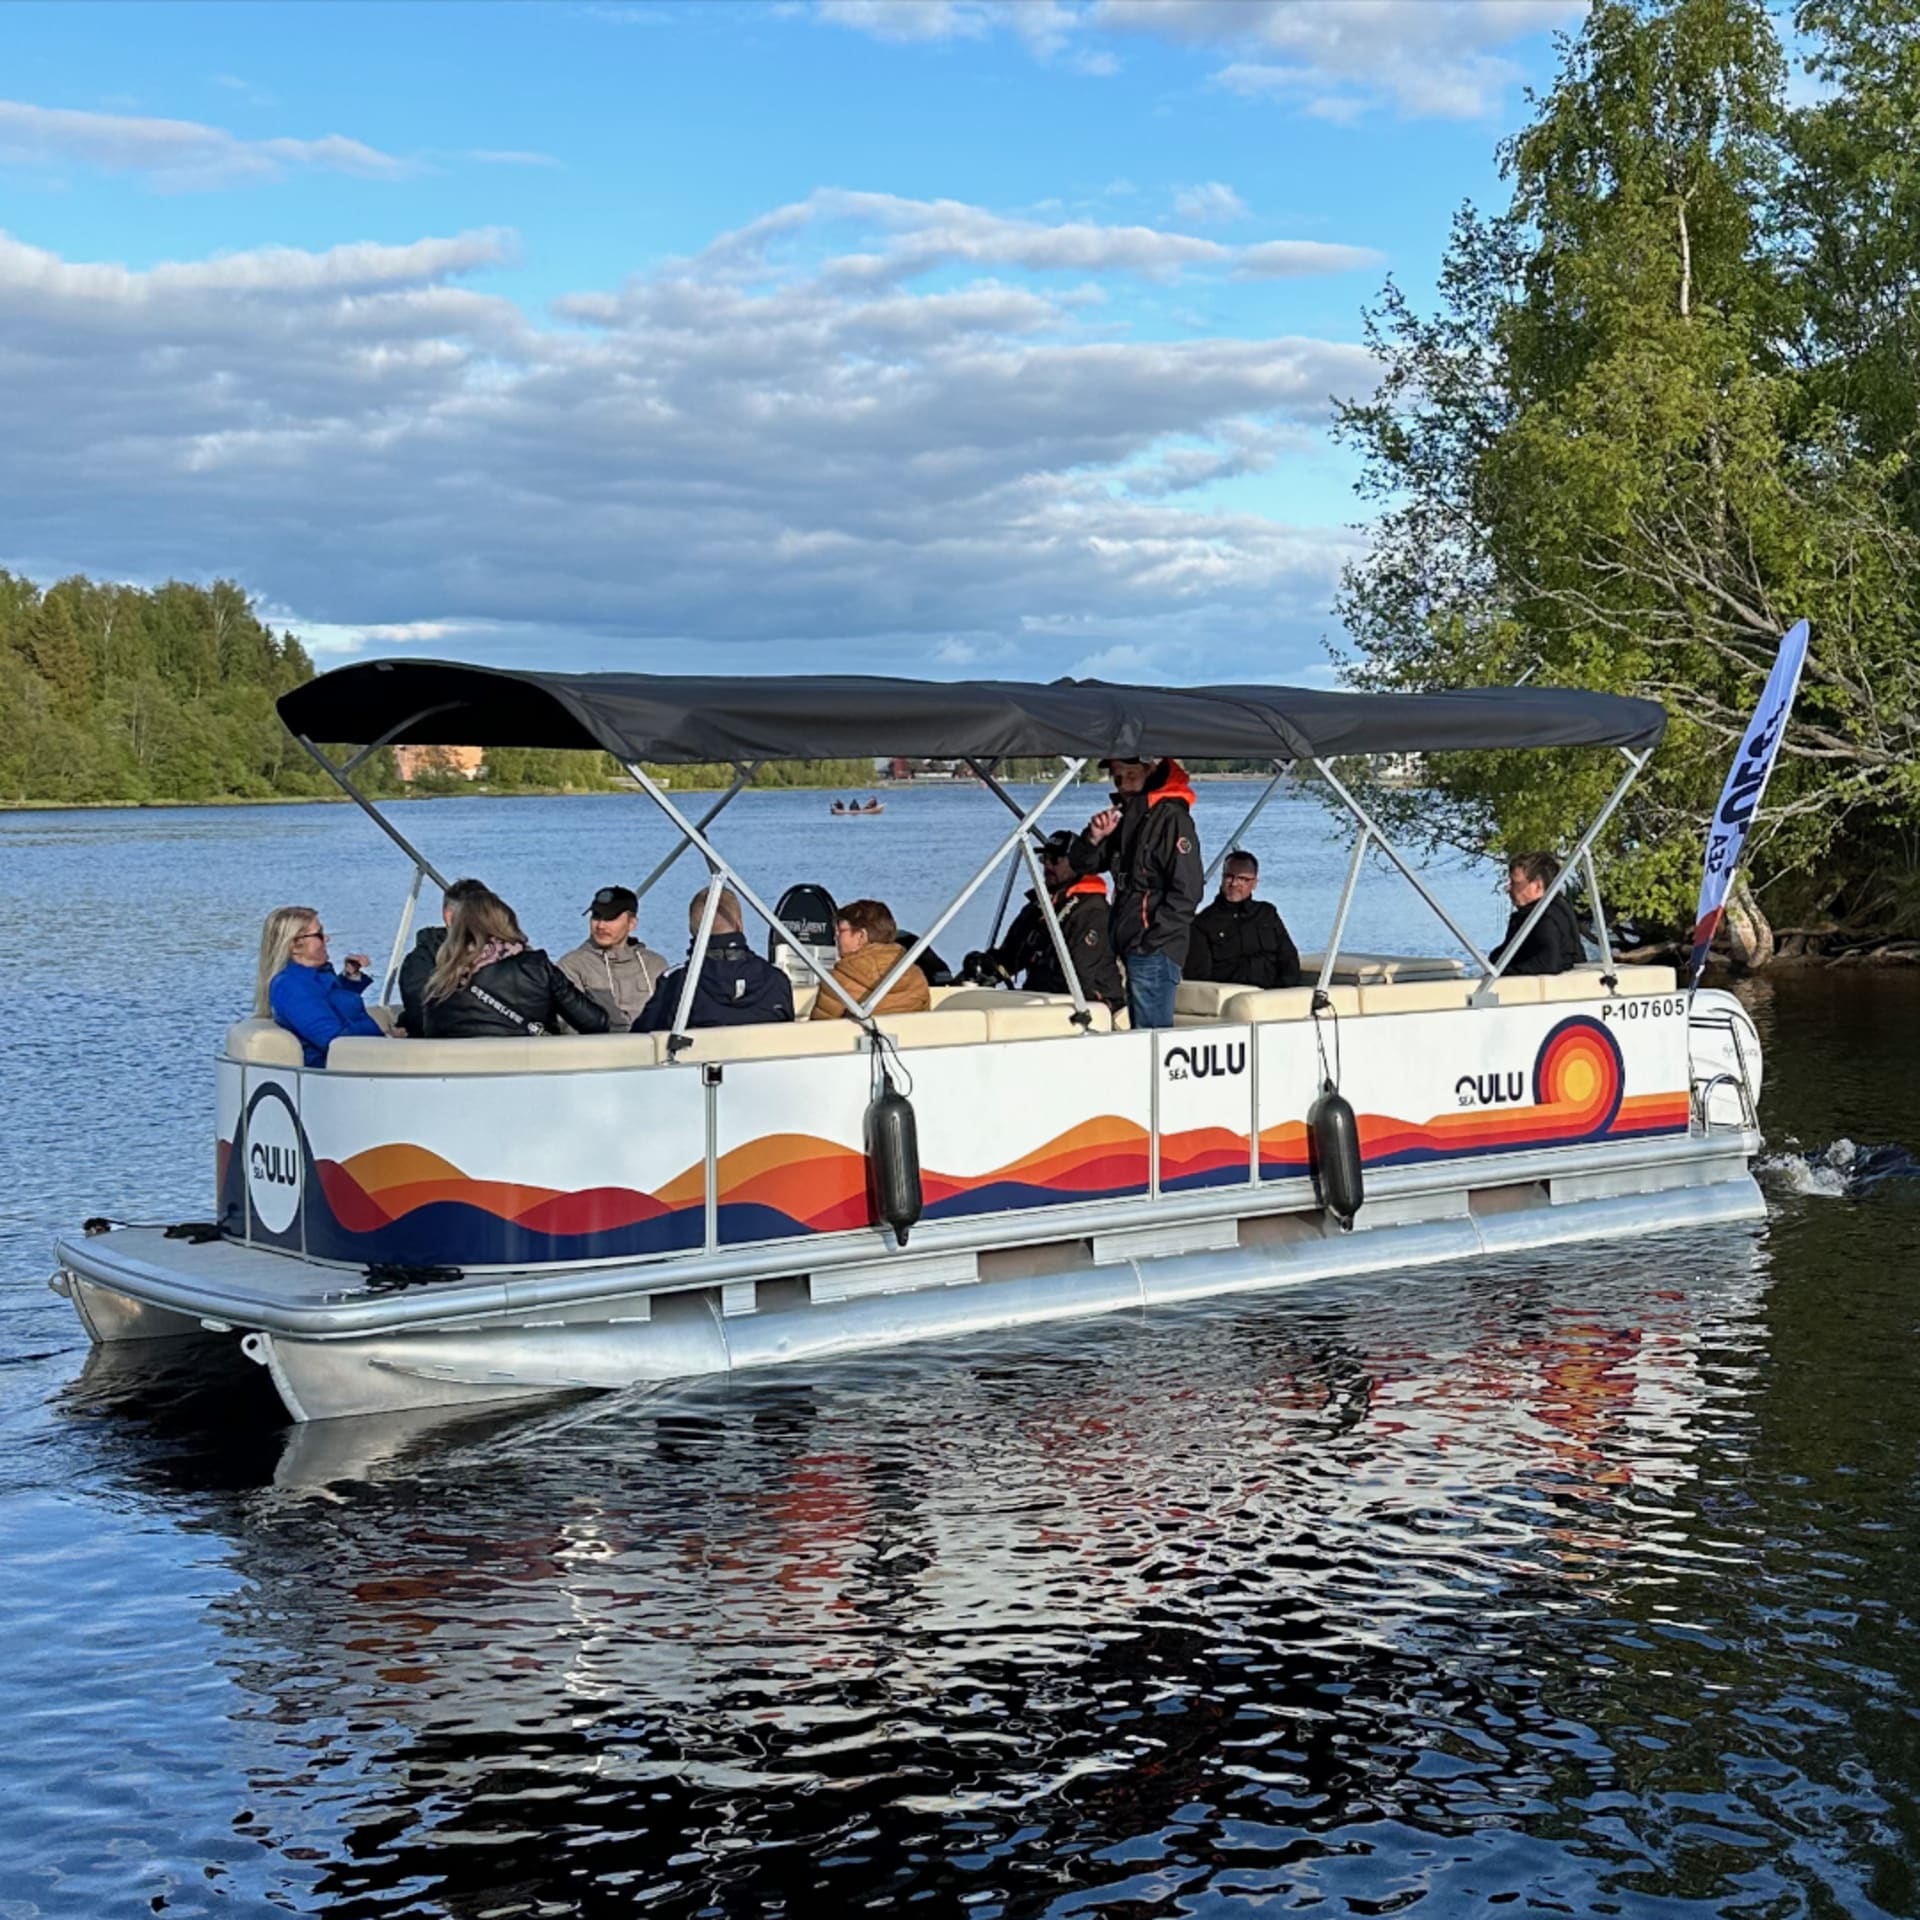 Sea Oulu Water Taxi